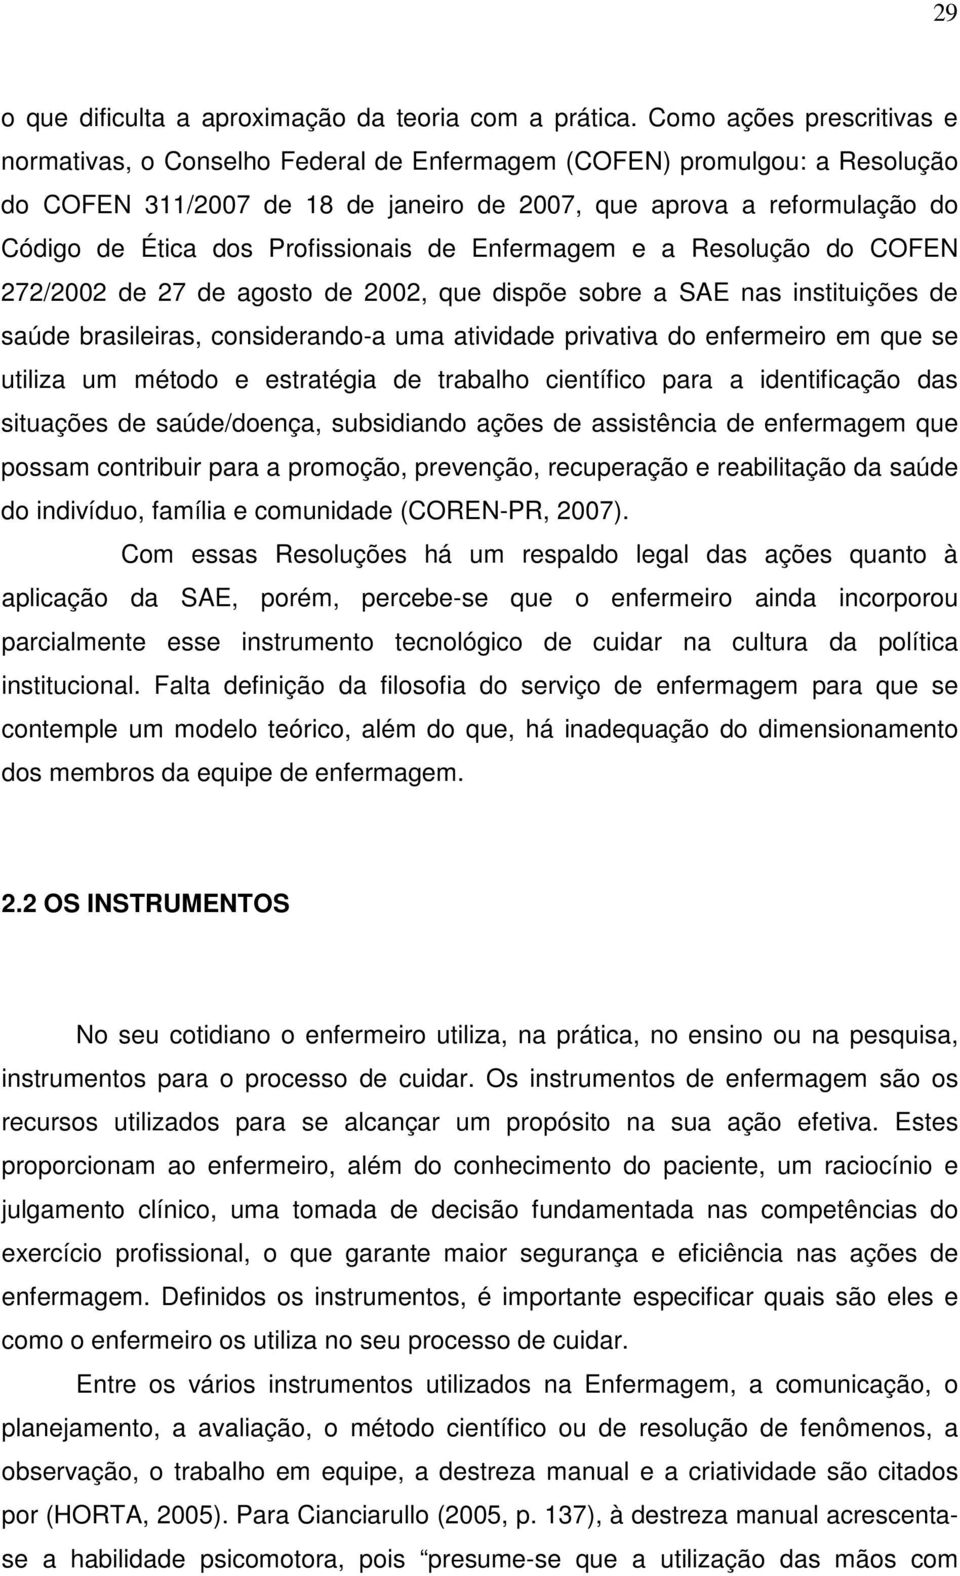 Profissionais de Enfermagem e a Resolução do COFEN 272/2002 de 27 de agosto de 2002, que dispõe sobre a SAE nas instituições de saúde brasileiras, considerando-a uma atividade privativa do enfermeiro